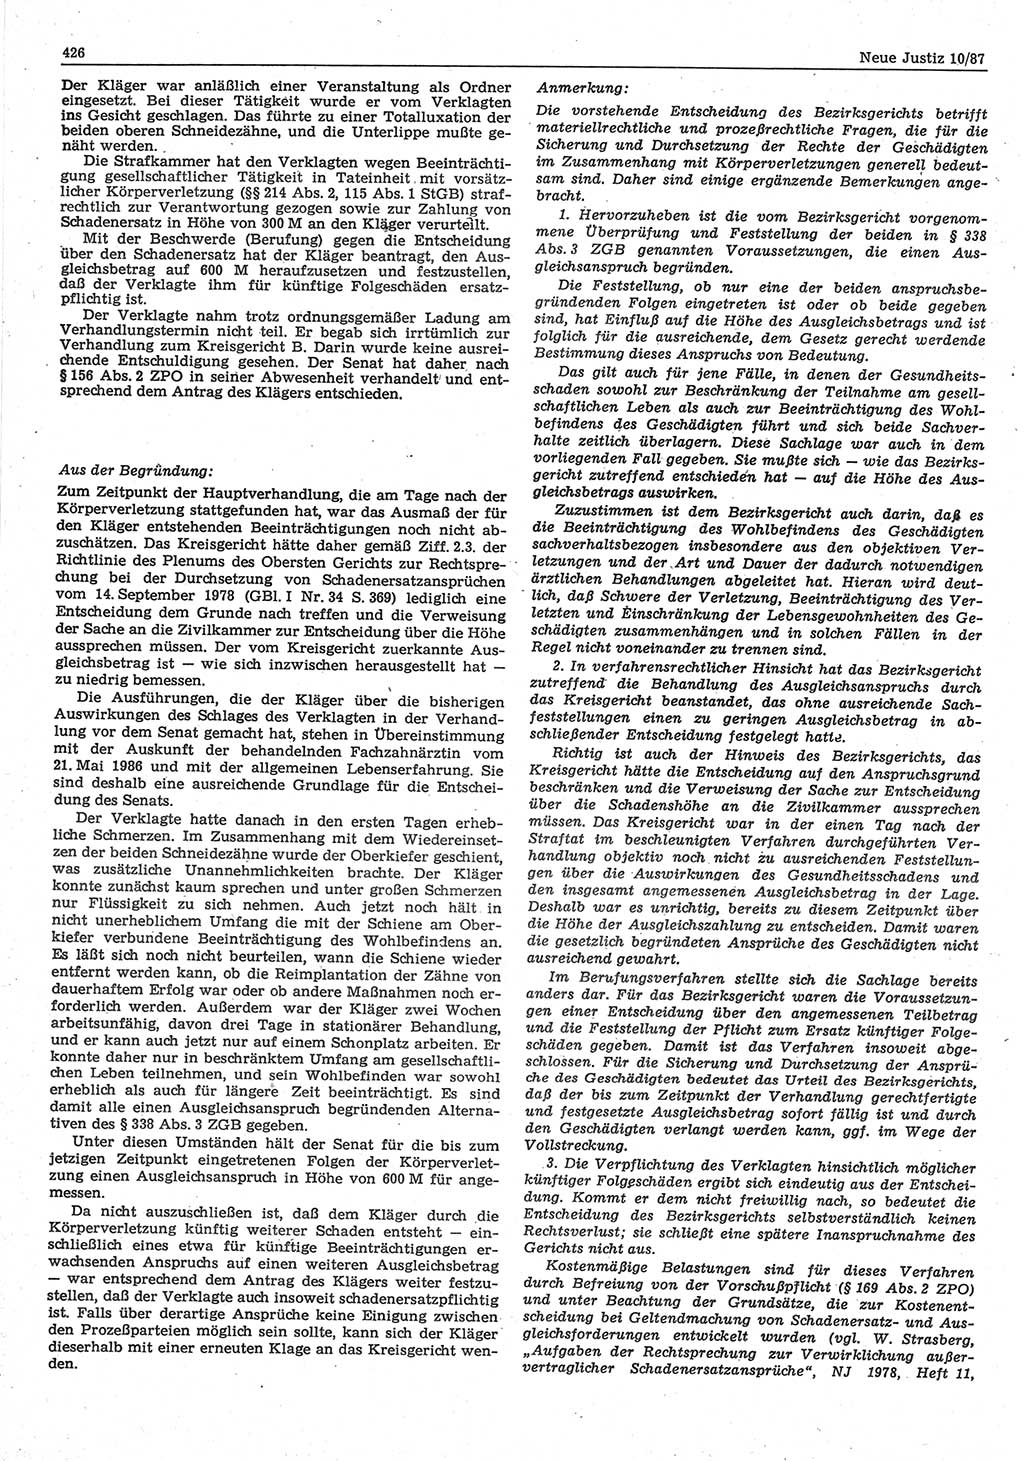 Neue Justiz (NJ), Zeitschrift für sozialistisches Recht und Gesetzlichkeit [Deutsche Demokratische Republik (DDR)], 41. Jahrgang 1987, Seite 426 (NJ DDR 1987, S. 426)